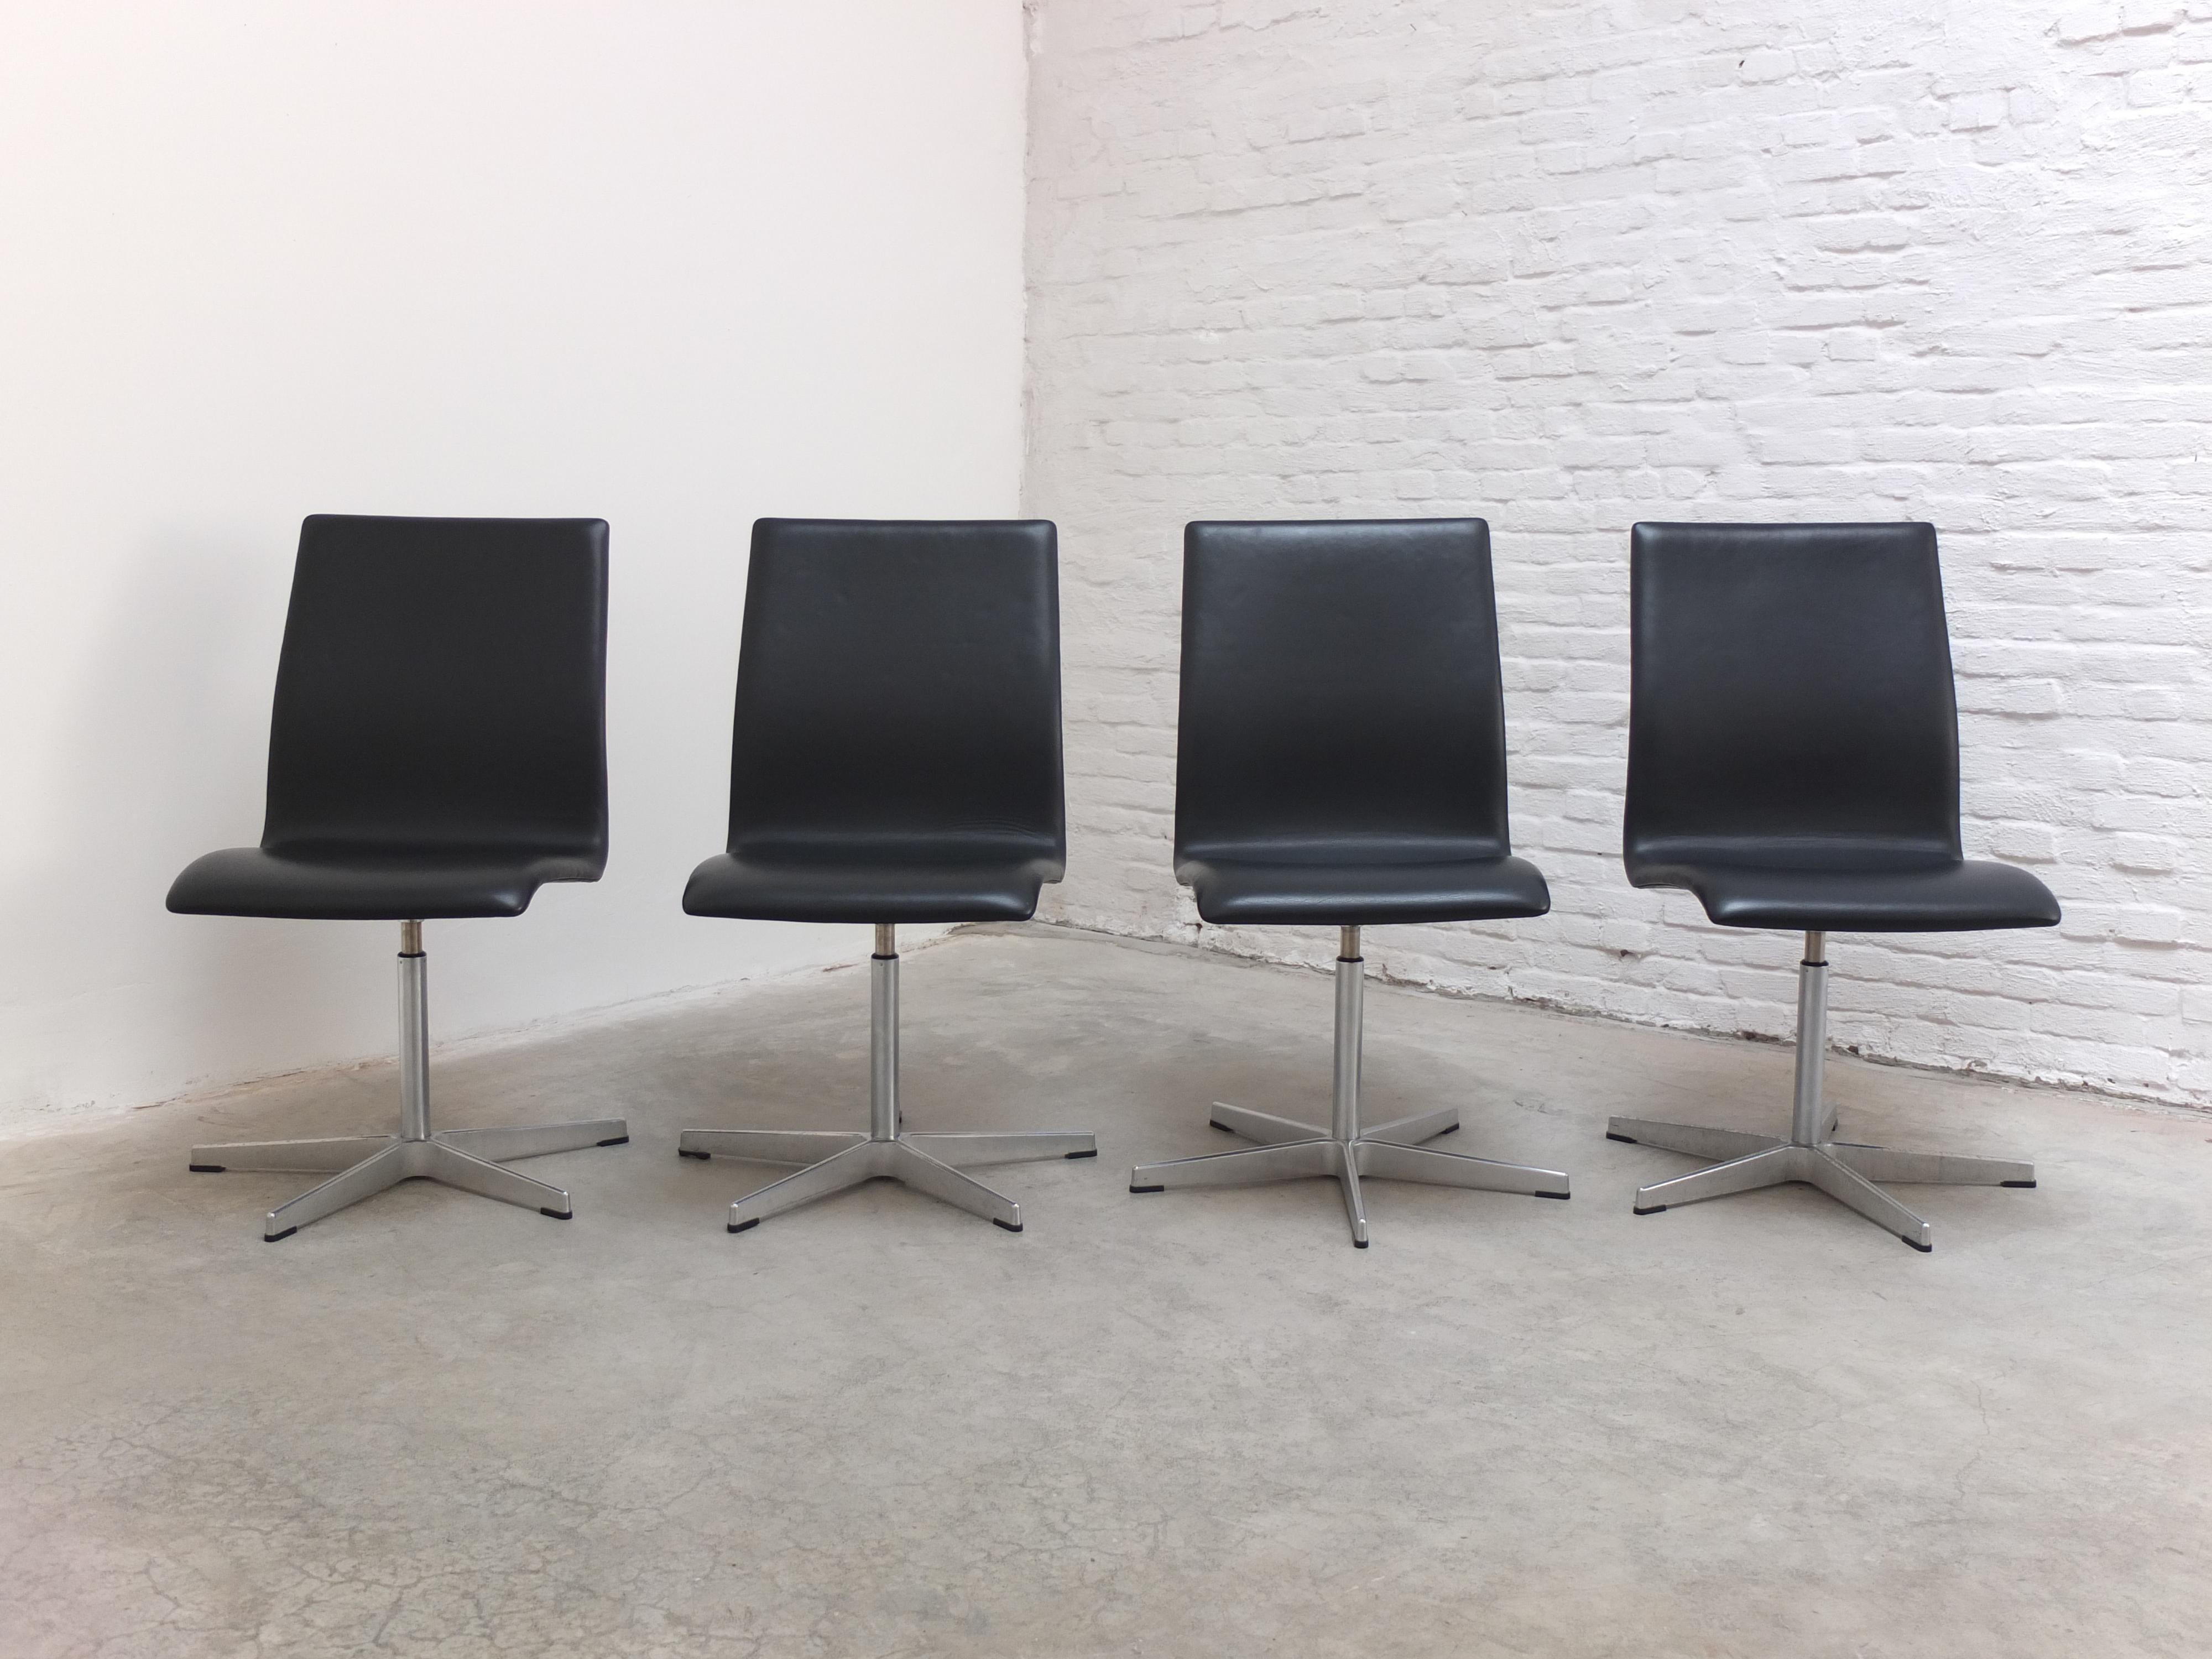 Bel ensemble de 4 chaises pivotantes 'Oxford' conçues par Arne Jacobsen en 1965 pour les professeurs du collège St-Catherine à Oxford. Ces exemplaires sont en cuir noir et possèdent la base en forme d'étoile en aluminium caractéristique de Jacobsen.